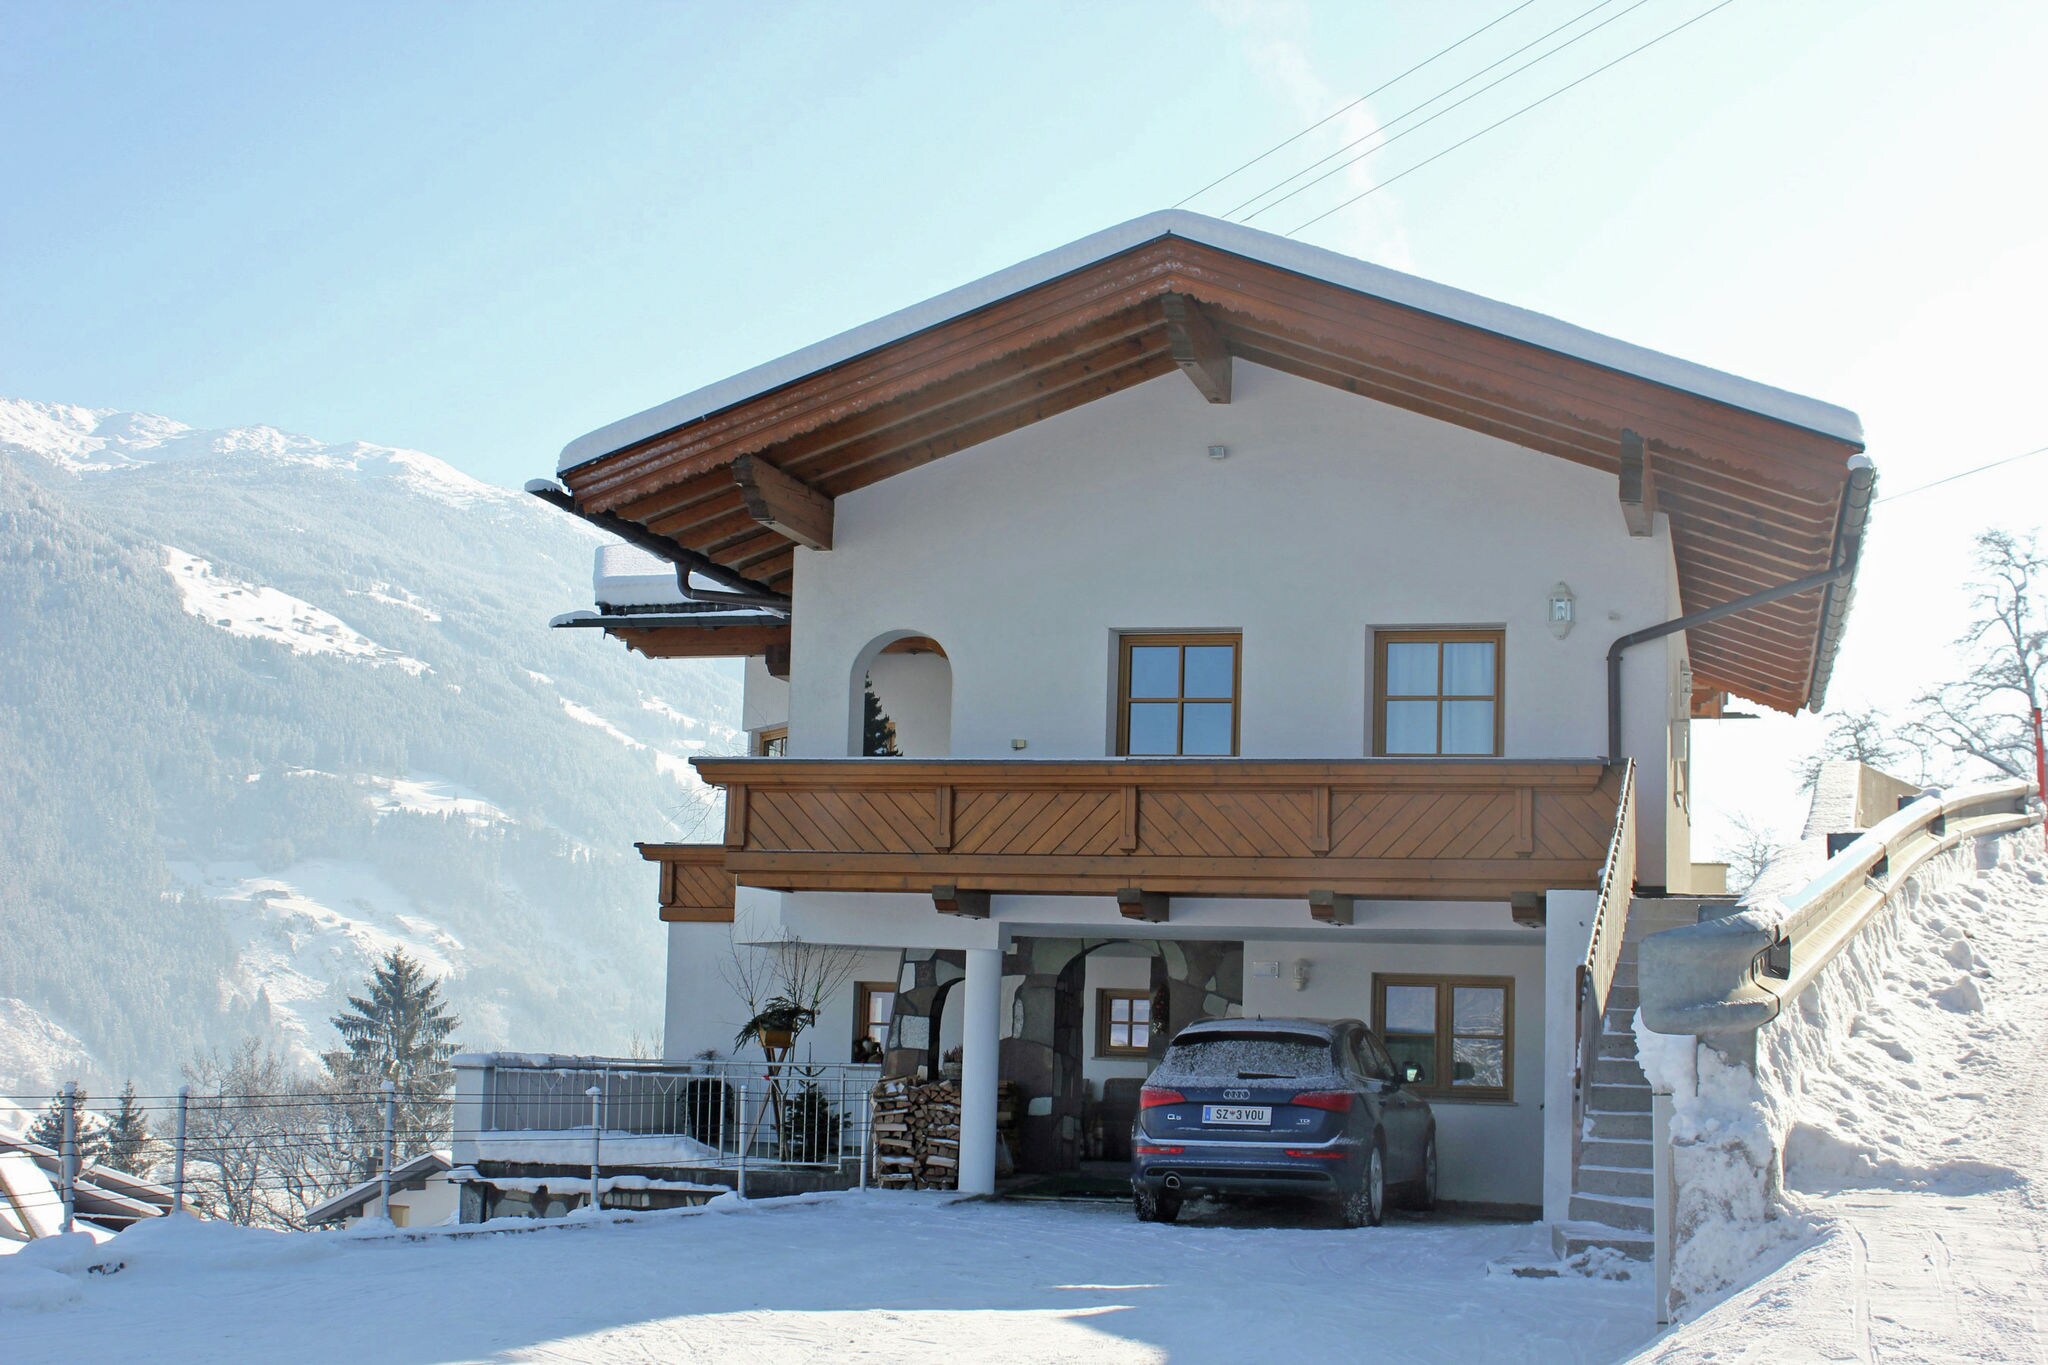 Comfotabele woning in Tirol met een prachtig uitzicht